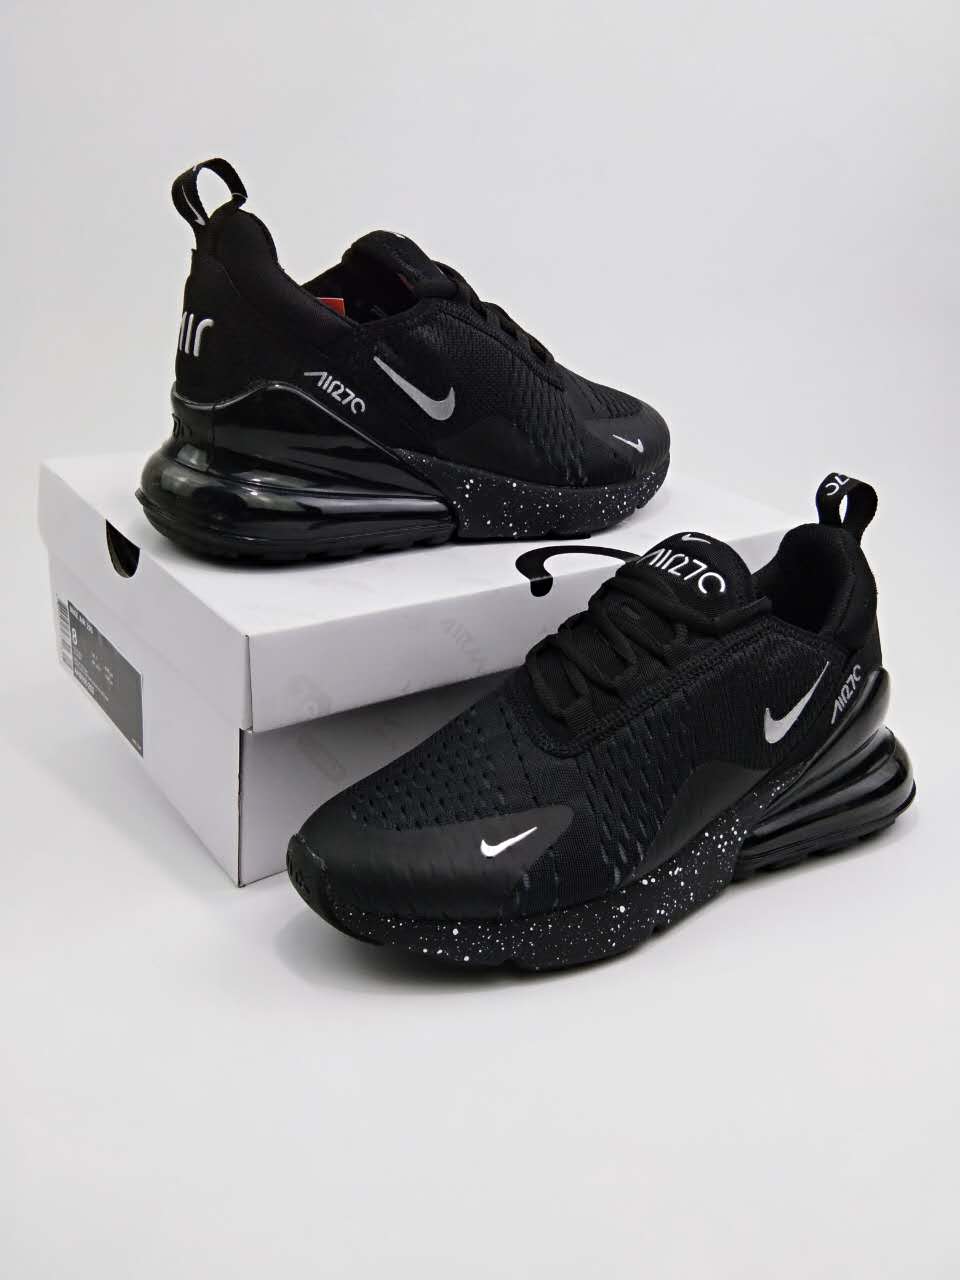 2018 New Nike Air Max Flair All Black Shoes